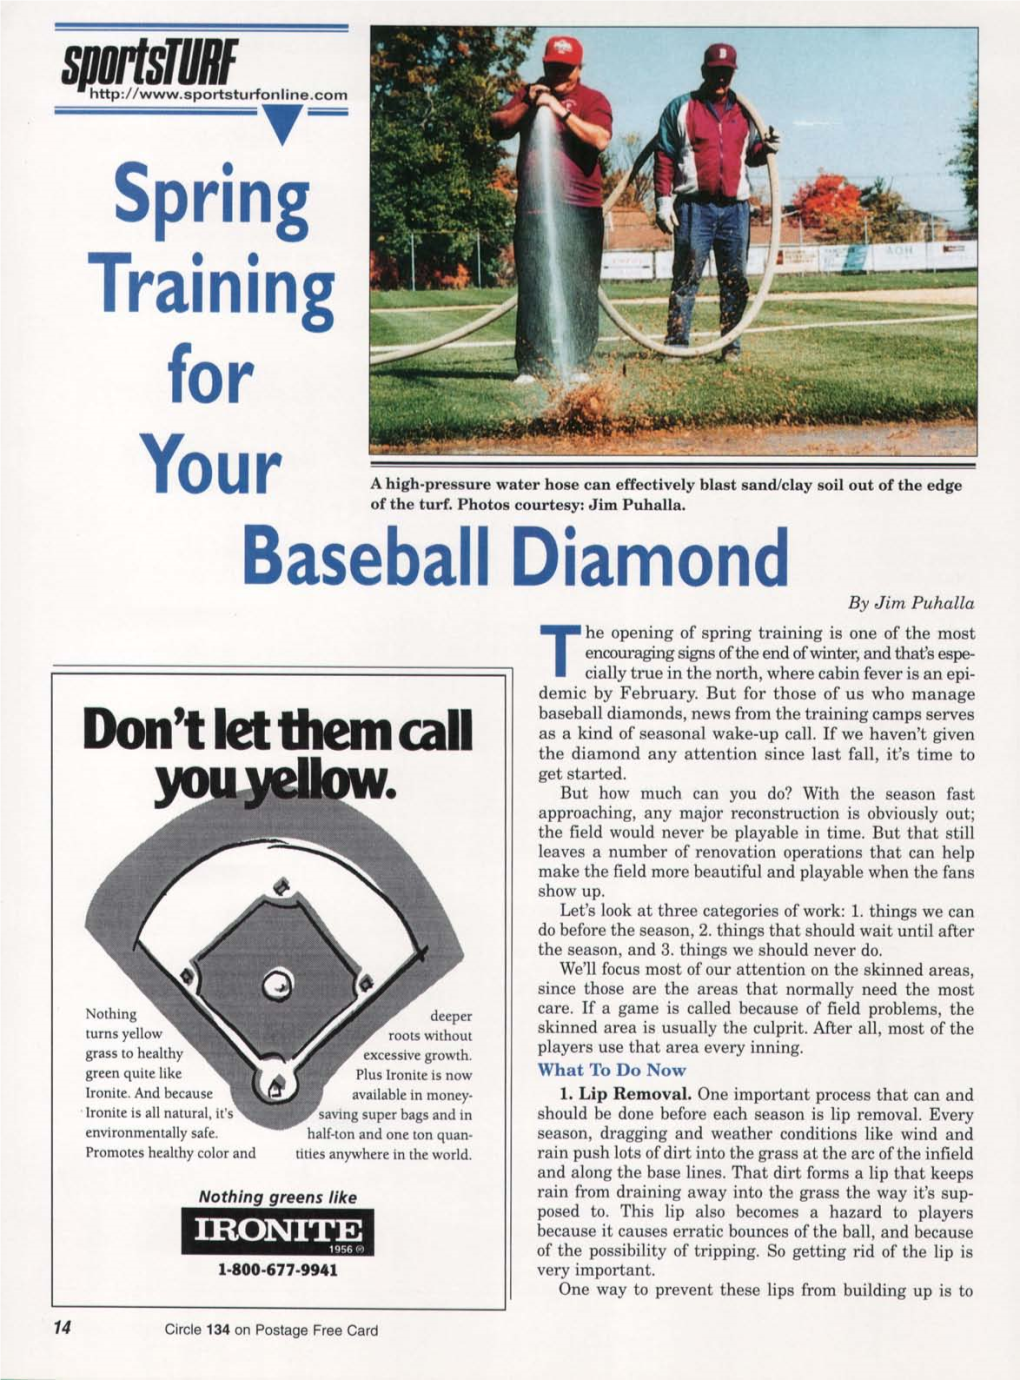 Spring Training for Baseball Diamond